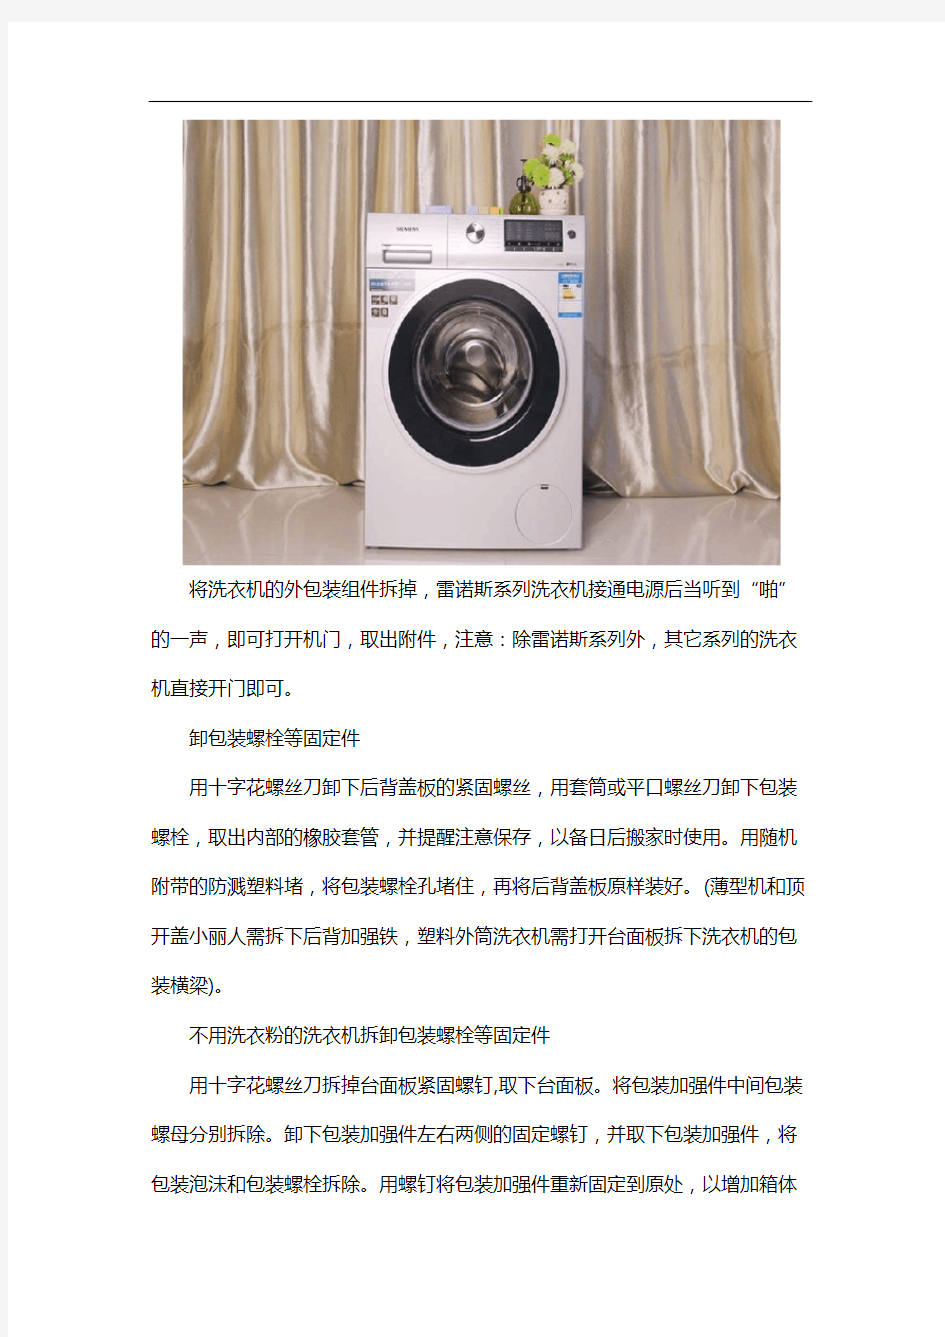 洗衣机常见小故障维修方法